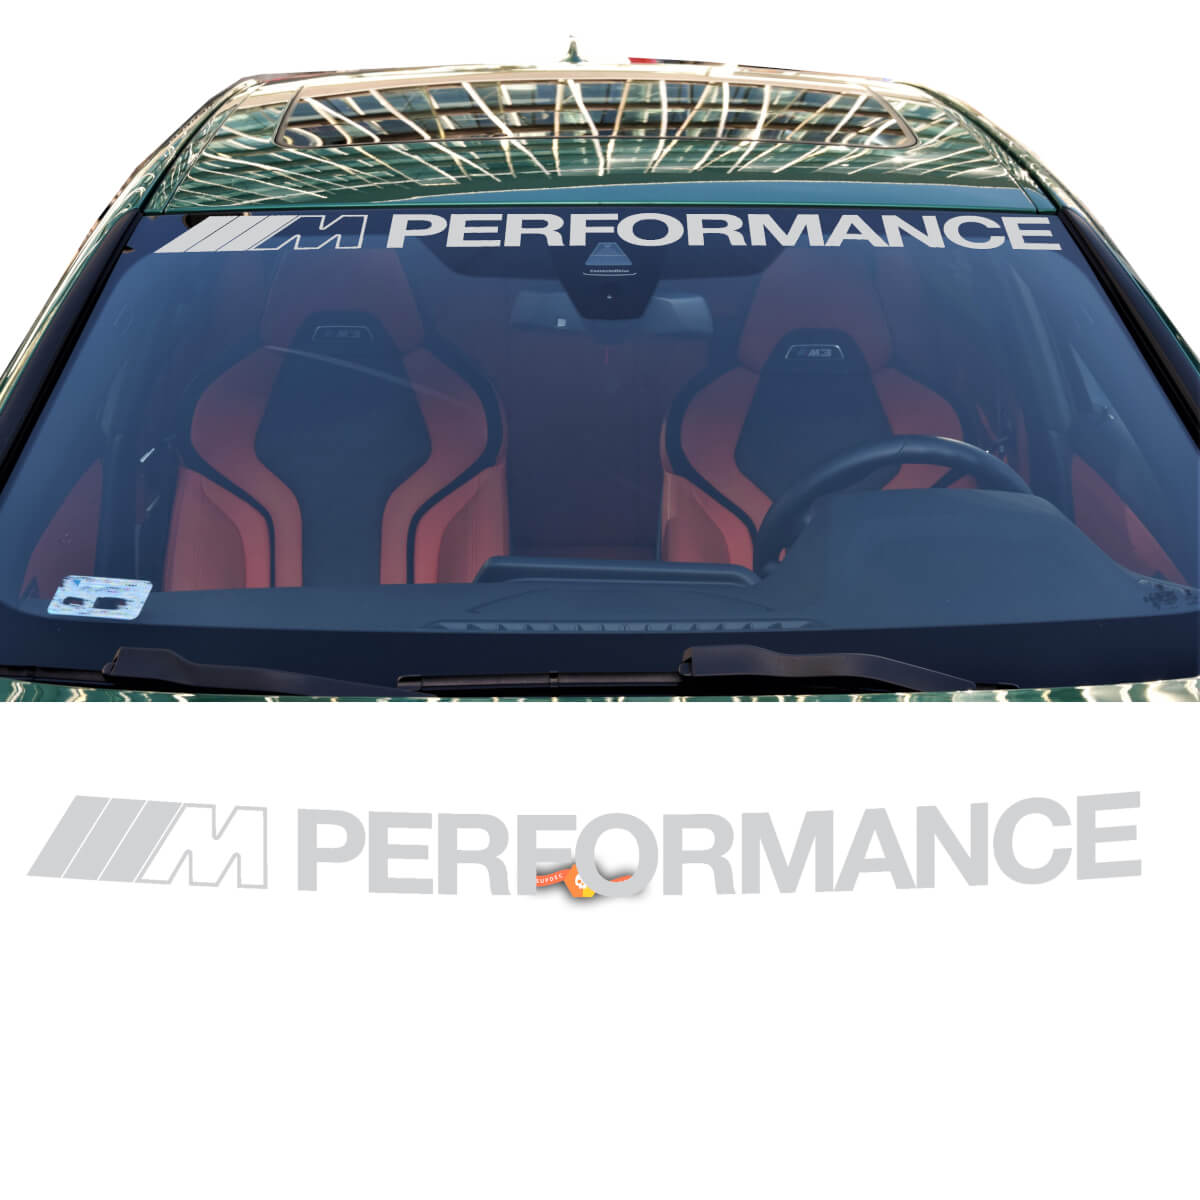 ///M Performance Aufkleber für Windschutzscheibe oder Heckscheibe passend zur BMW G-Serie
